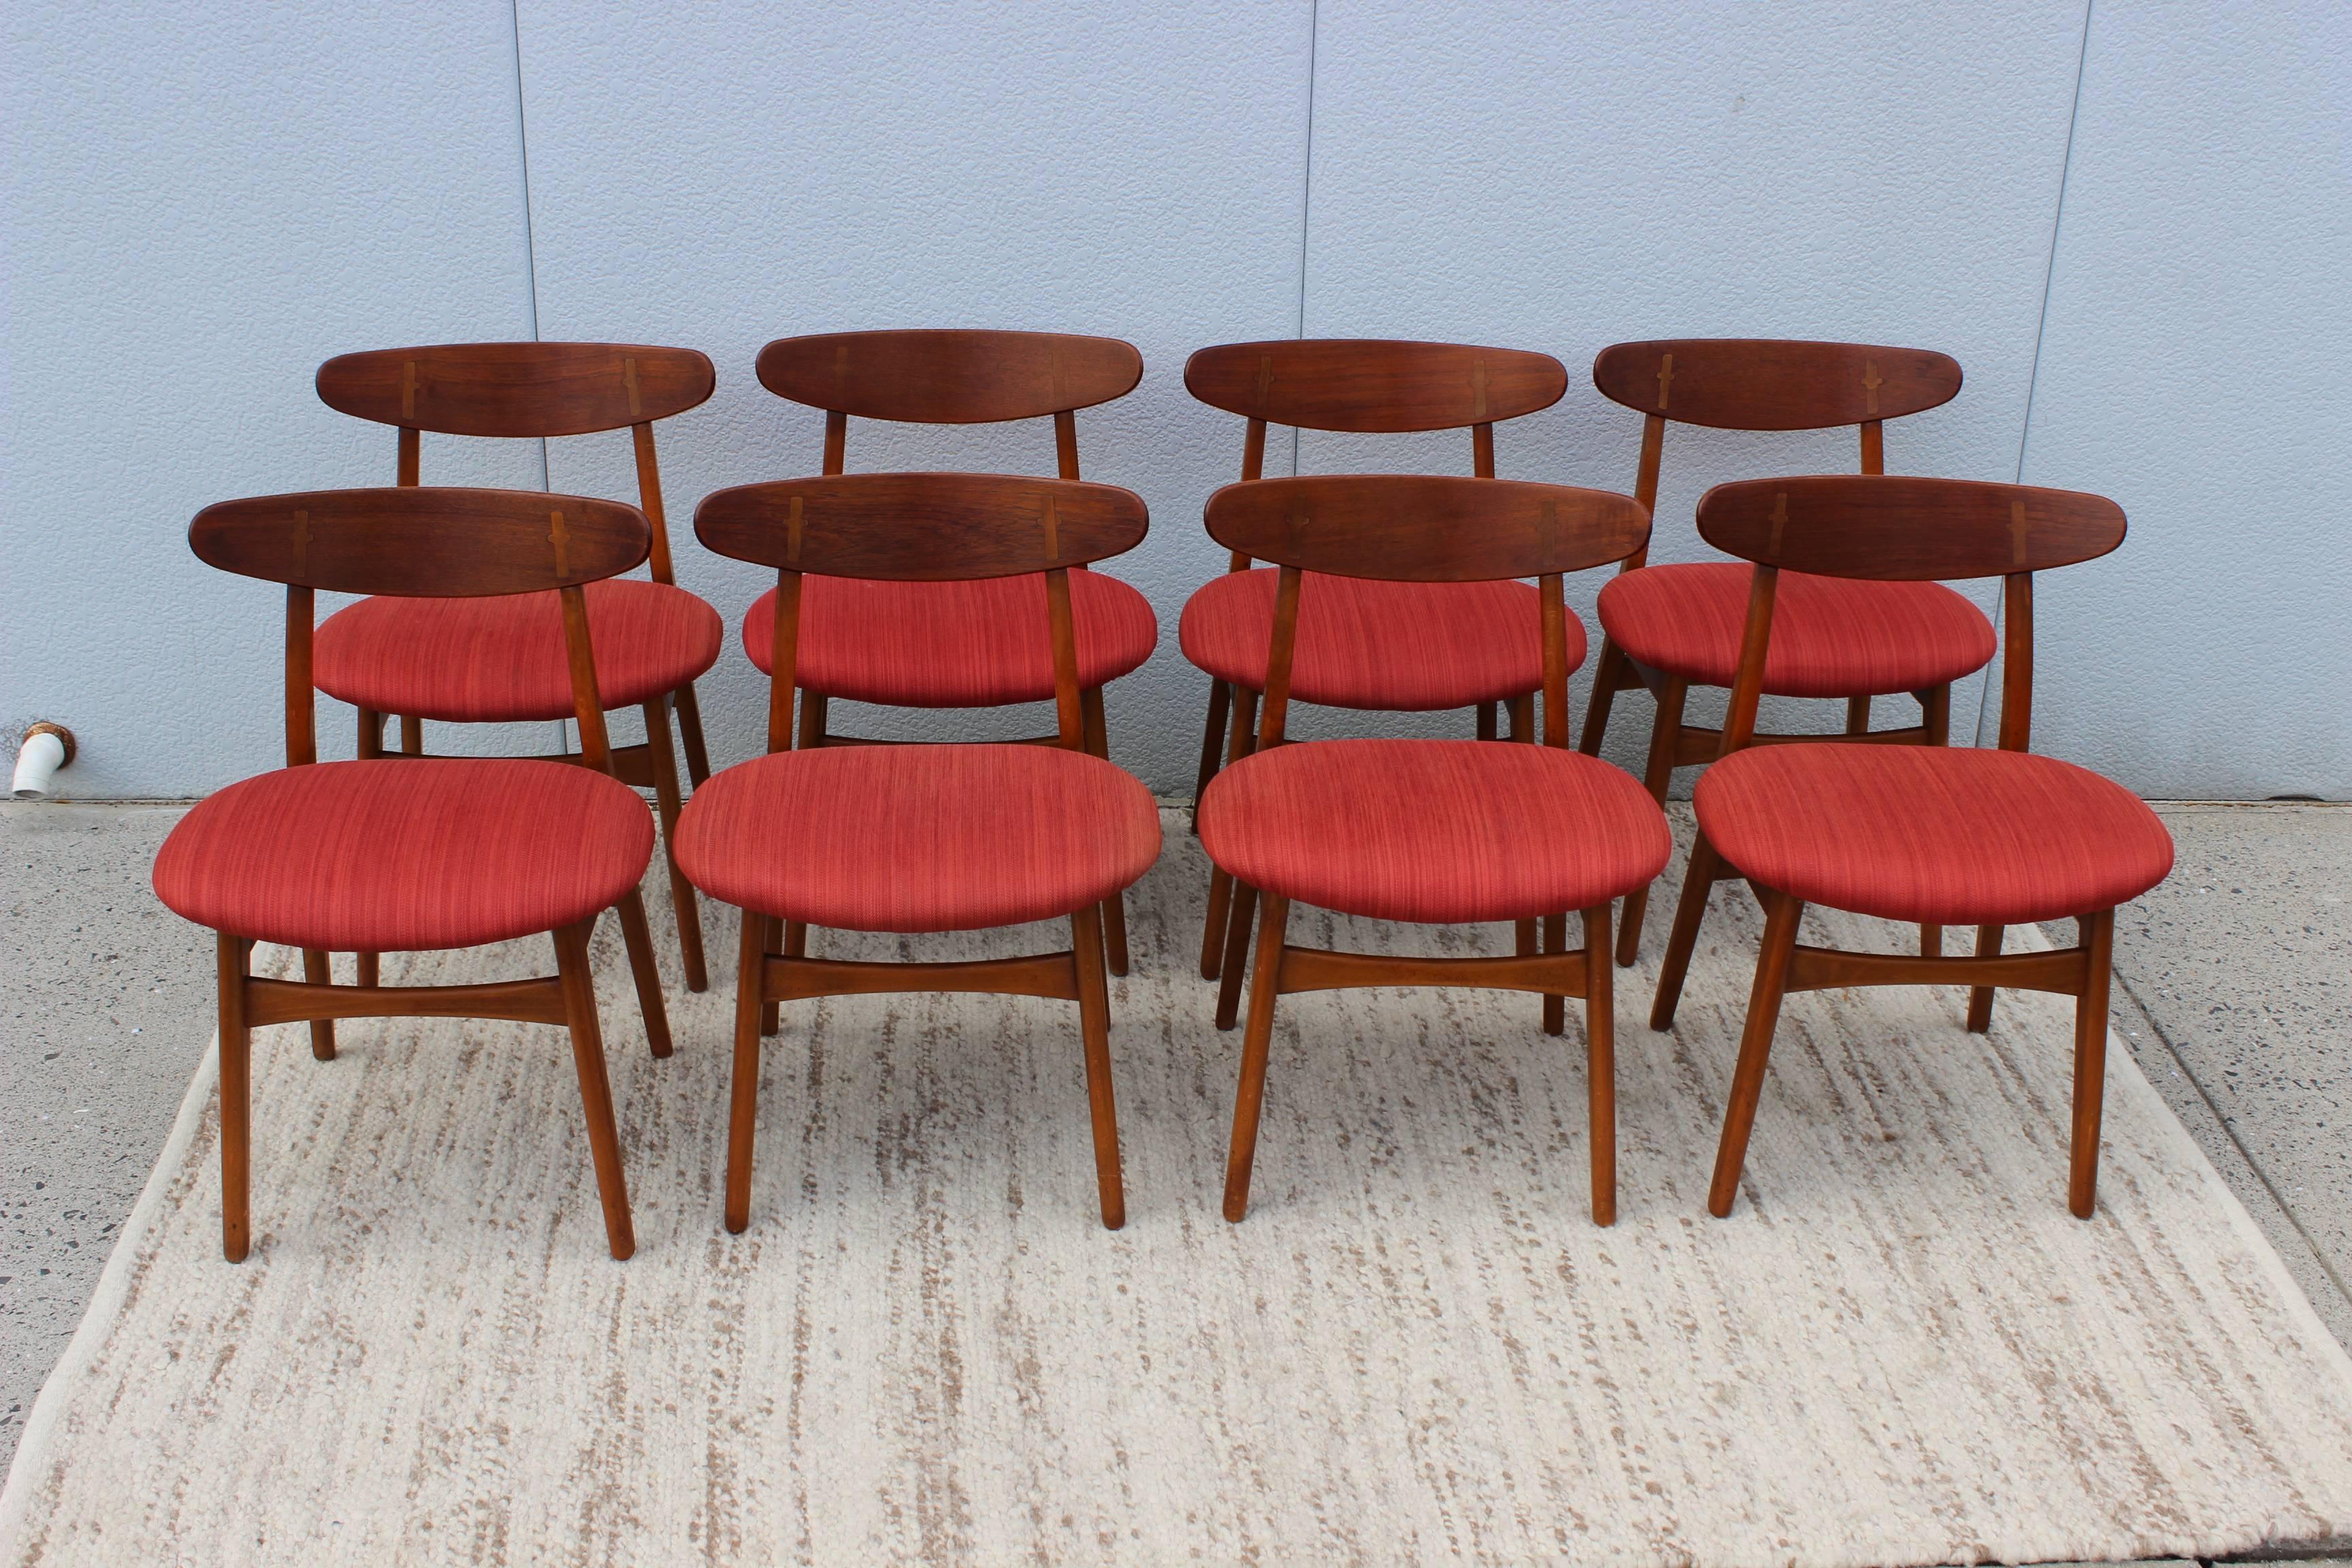 Stunning set of eight teak dining chairs designed by Hans J. Wegner for Carl Hansen & Son.